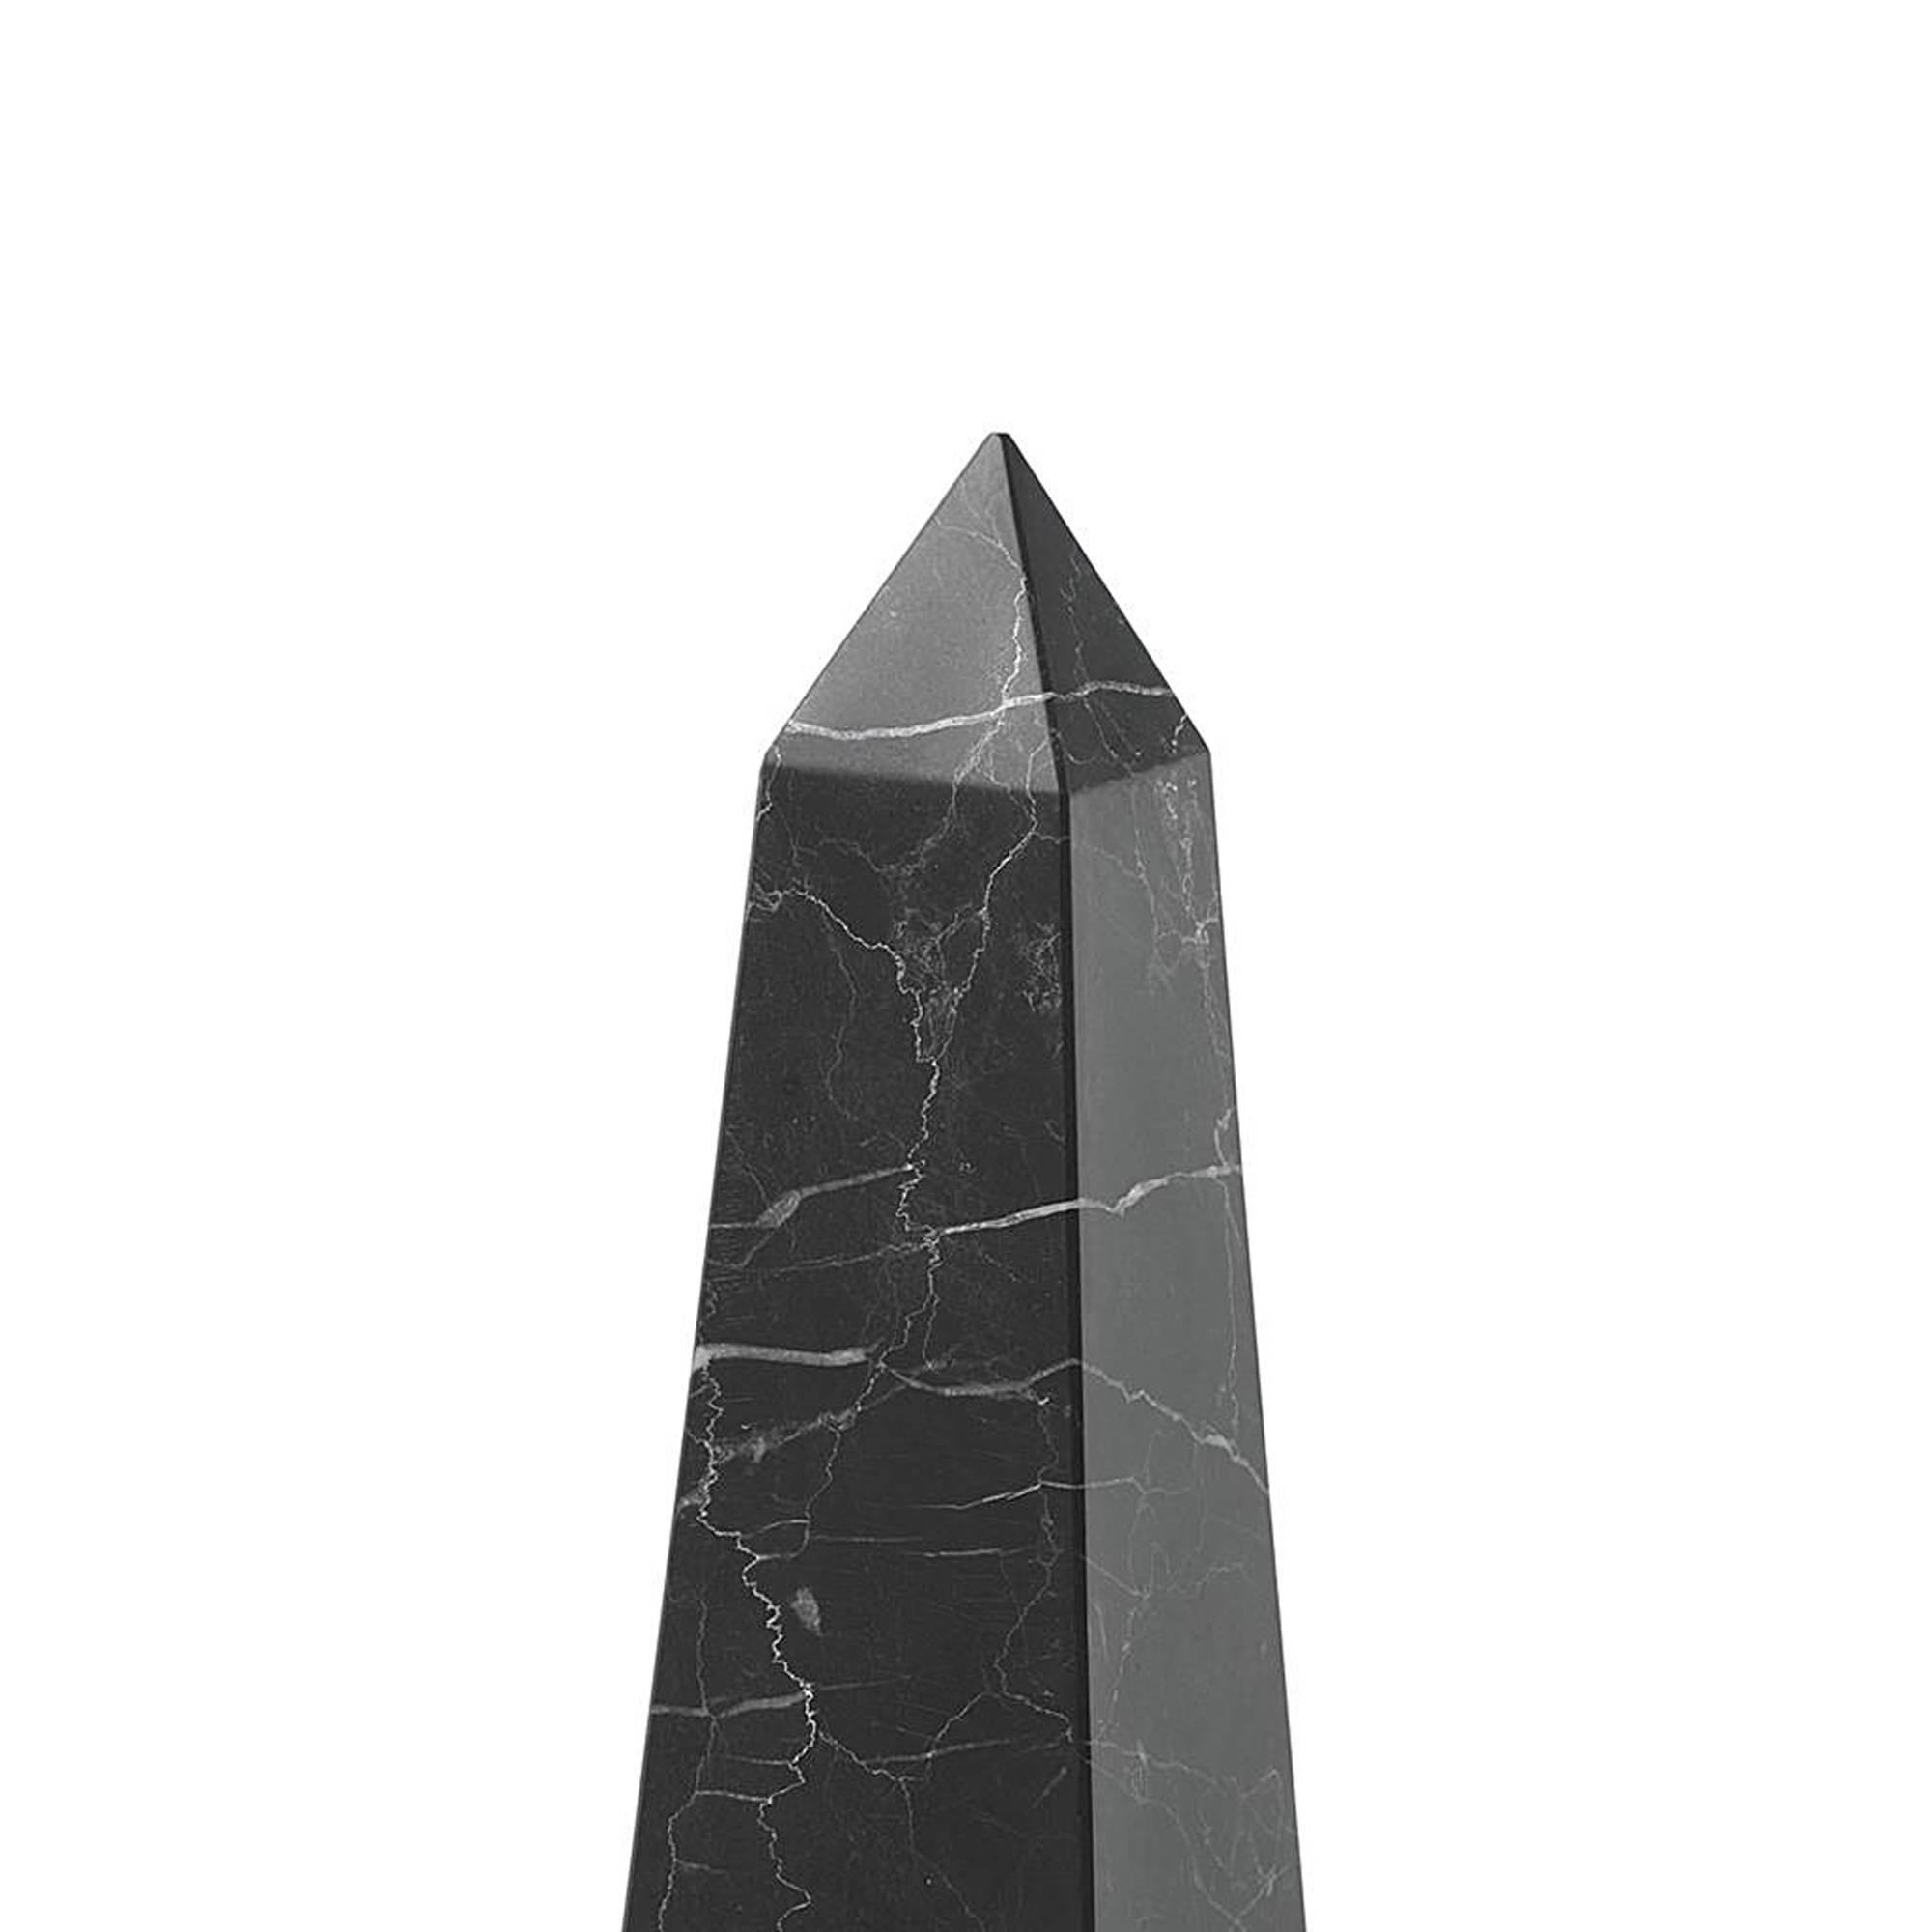 obelisk in arizona